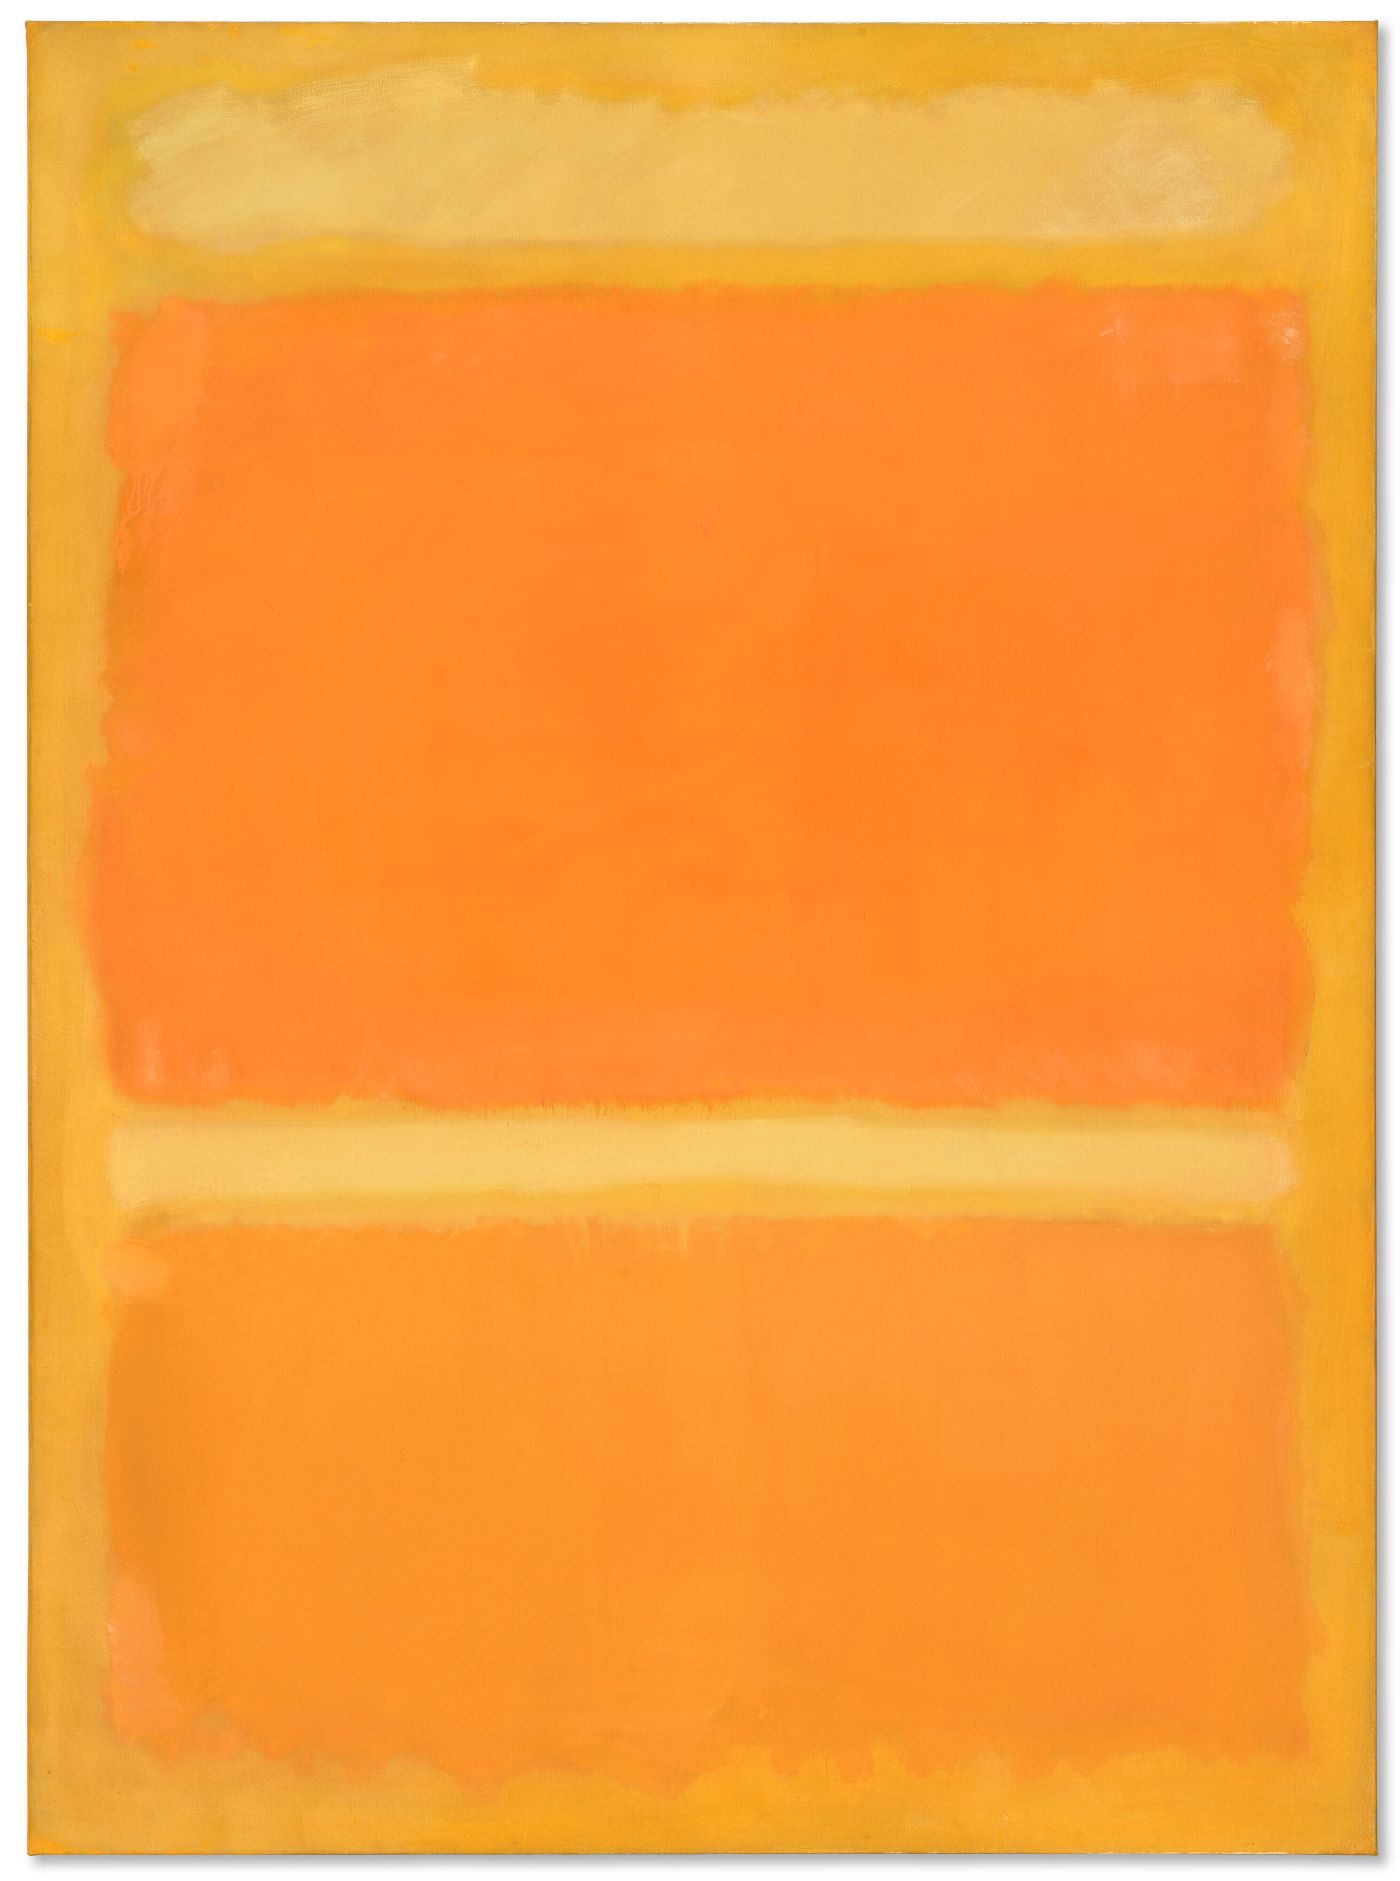 Κίτρινο, Πορτοκαλί, Κίτρινο, Ανοιχτό Πορτοκαλί. Μαρκ Ρόθκο, 1955